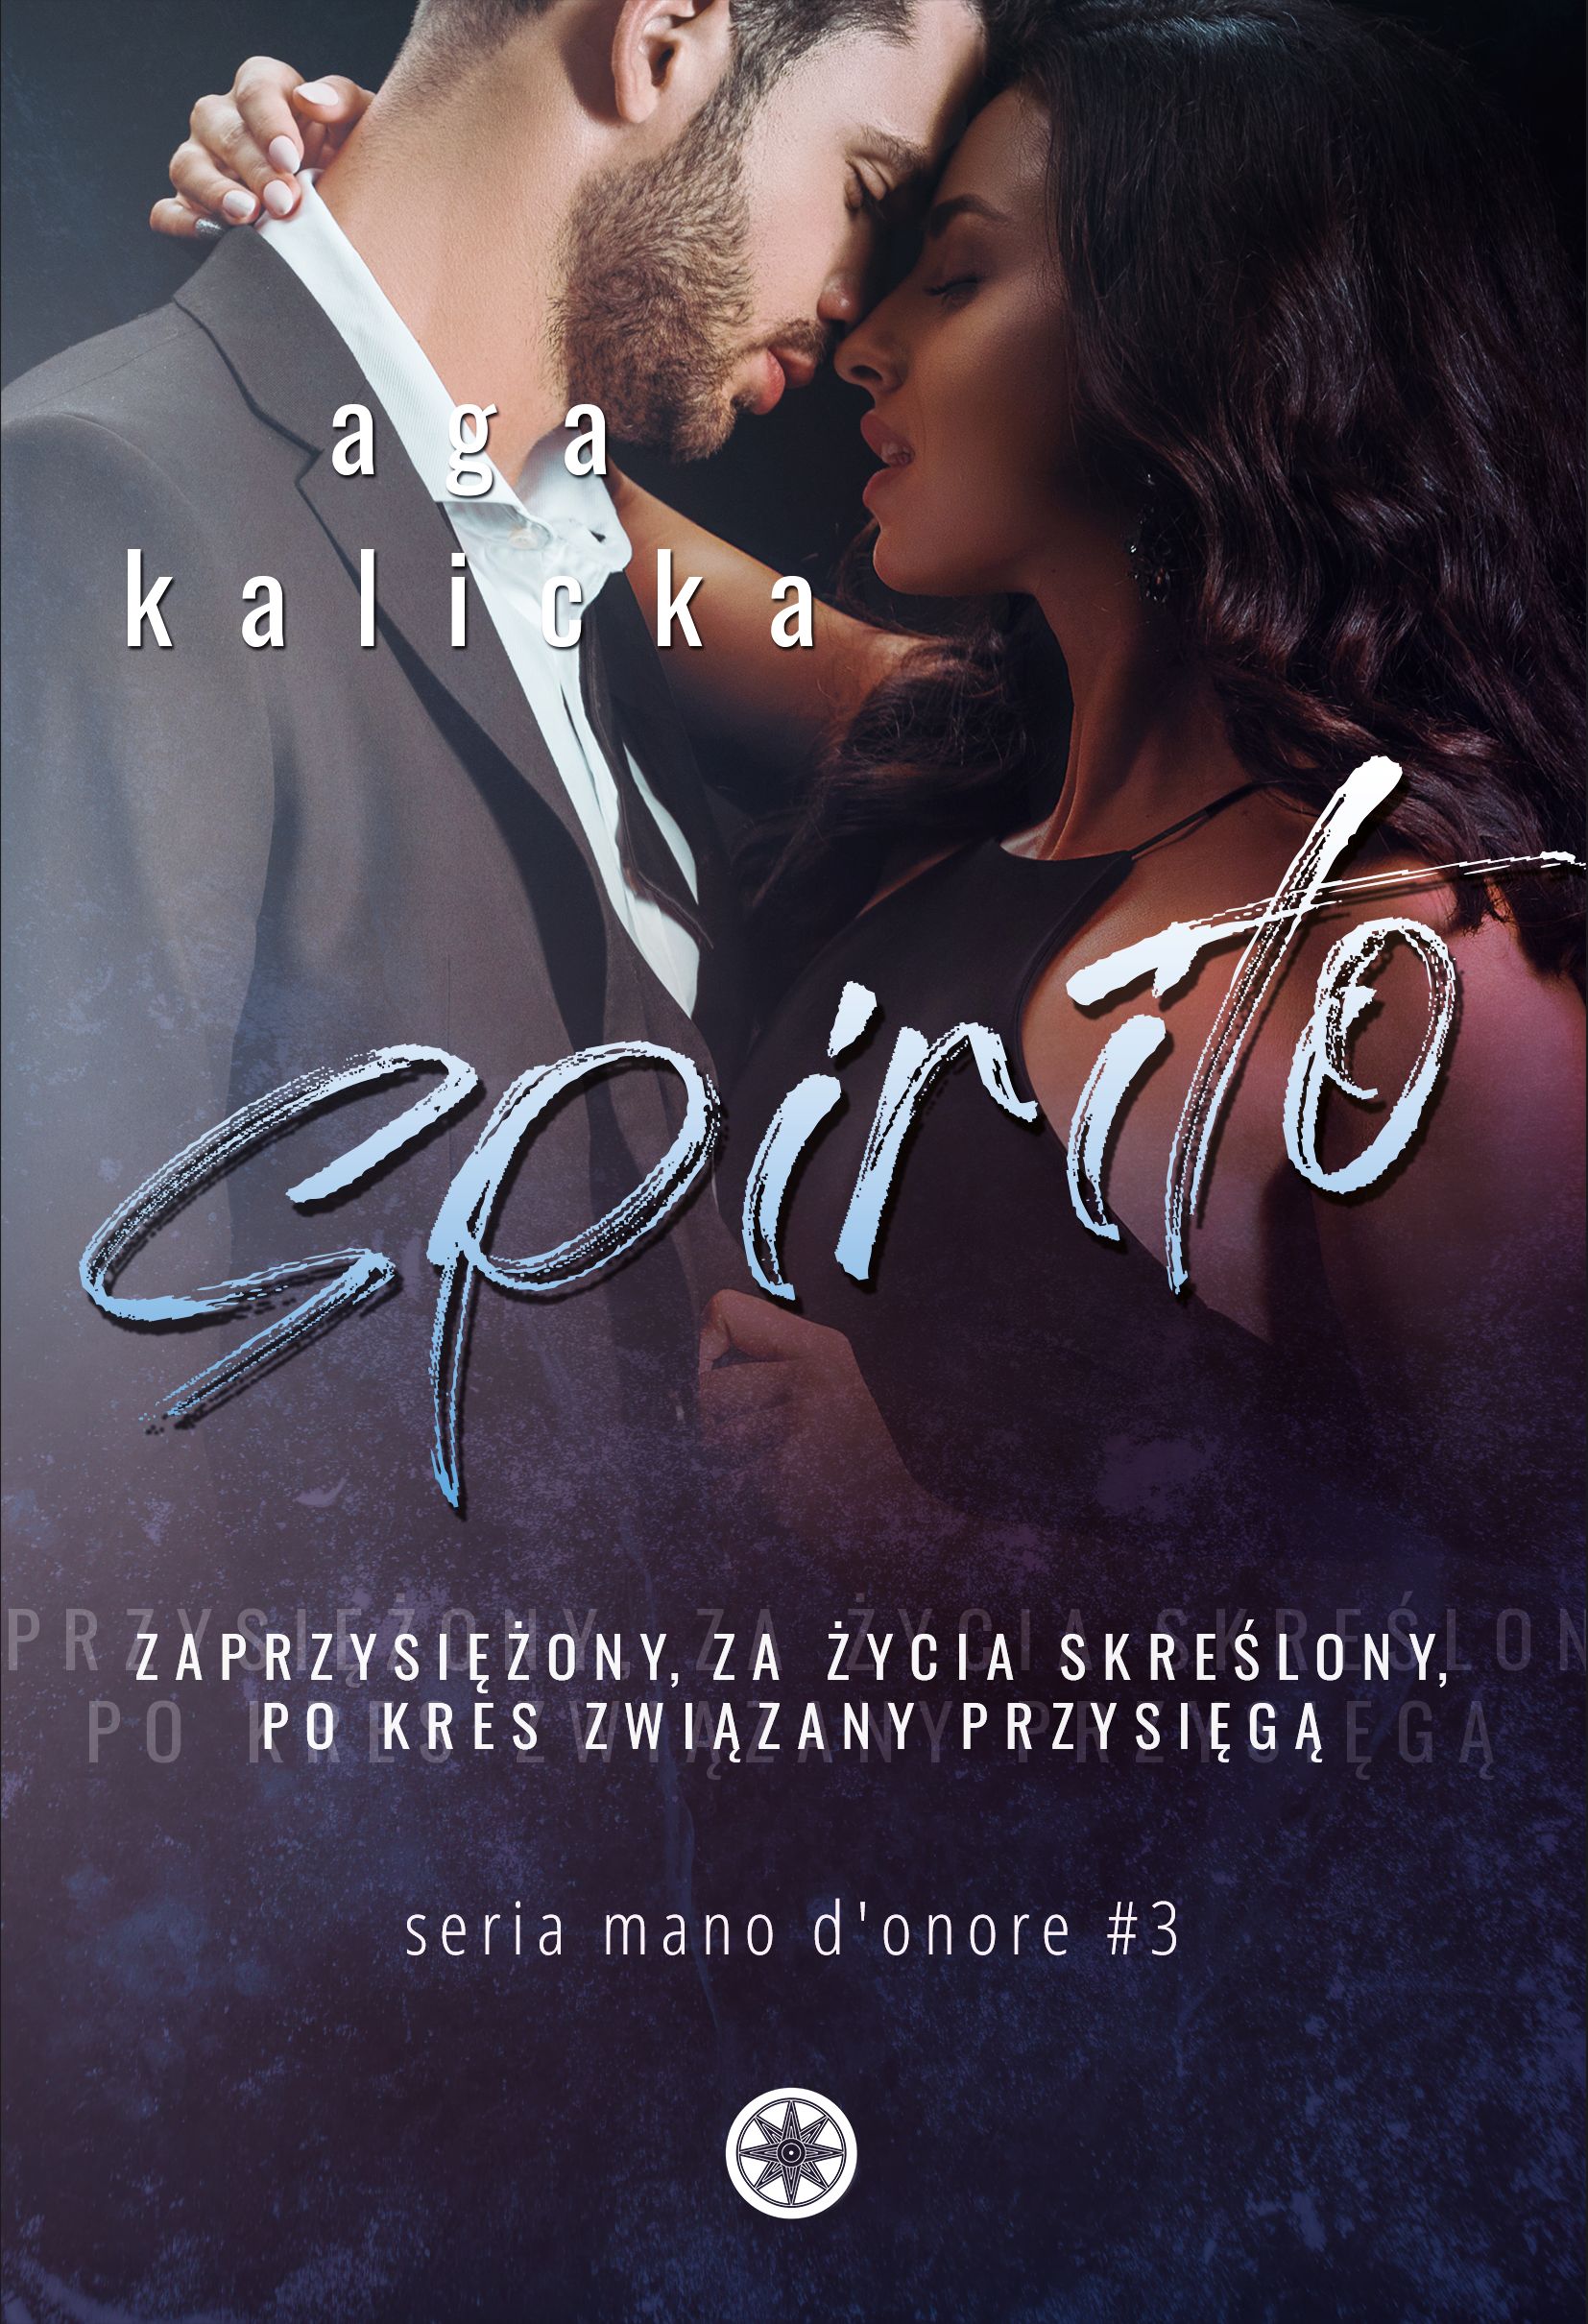 Spirito - Aga Kalicka